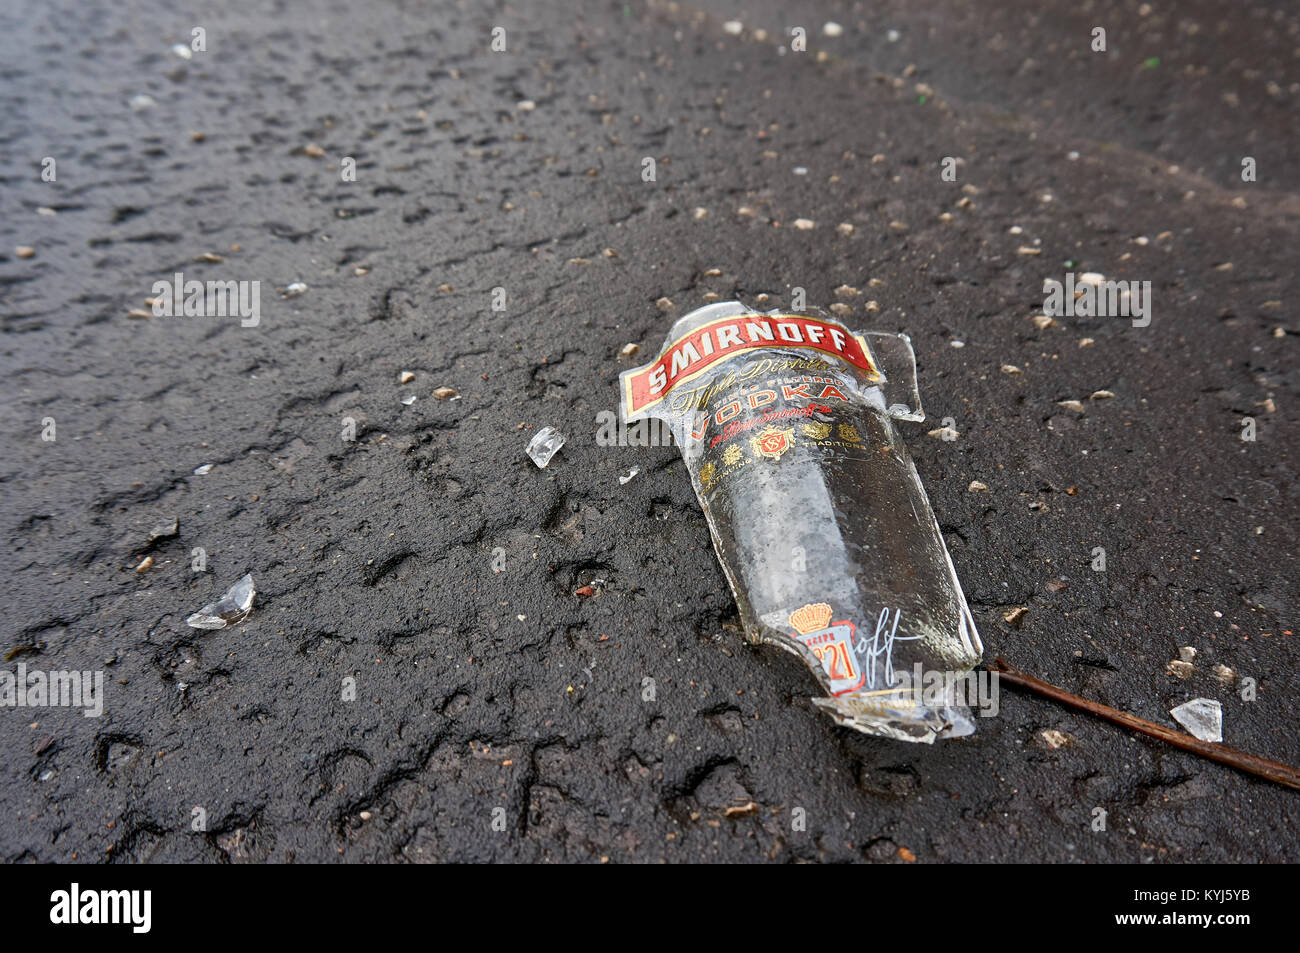 Rotture di bottiglia di Smirnoff vodka sul marciapiede. Foto Stock